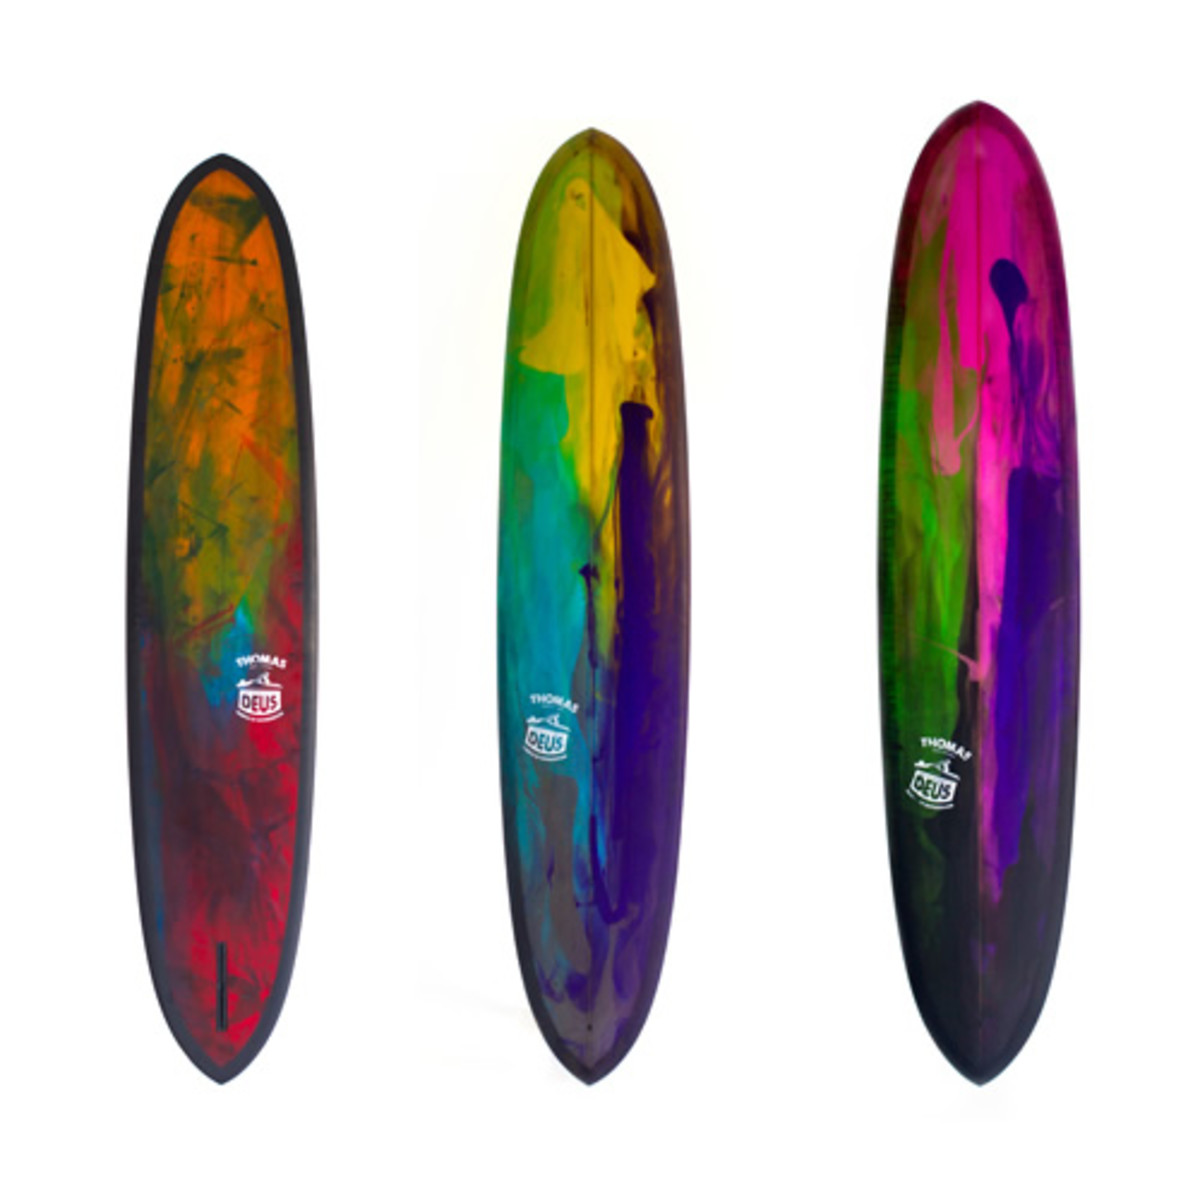 Thomas Surfboards x Deus - Acquire